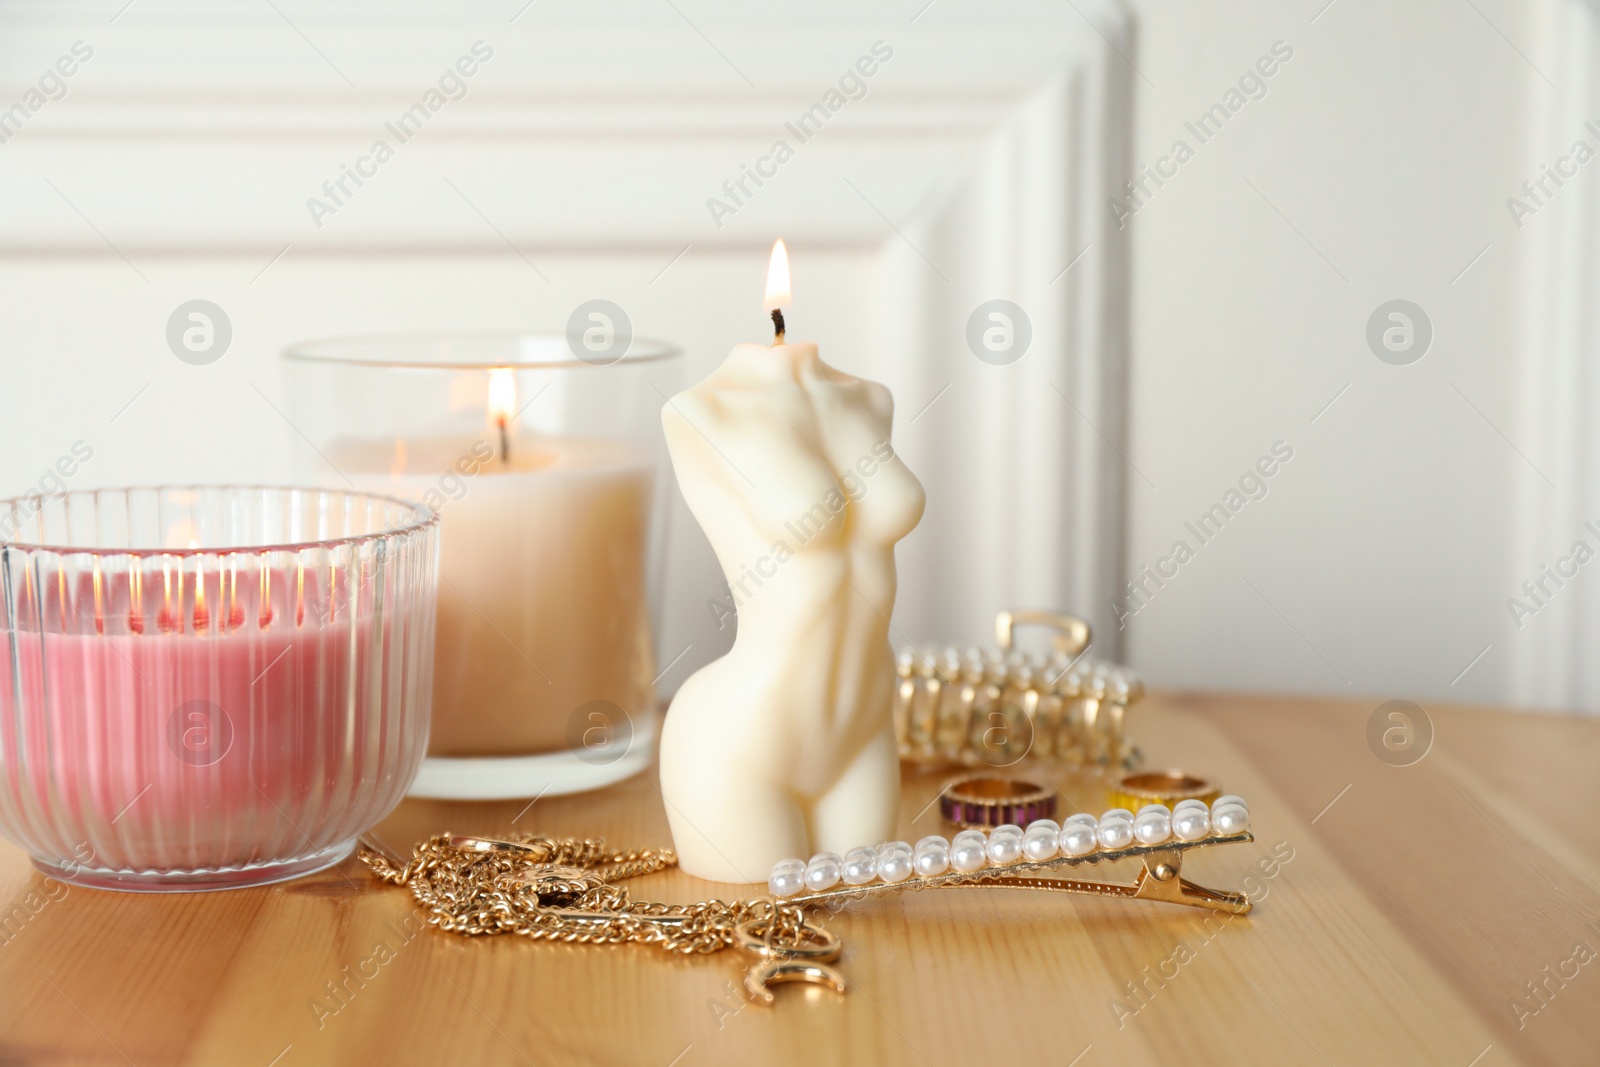 Photo of Beautiful female body shape candle on wooden table. Stylish decor